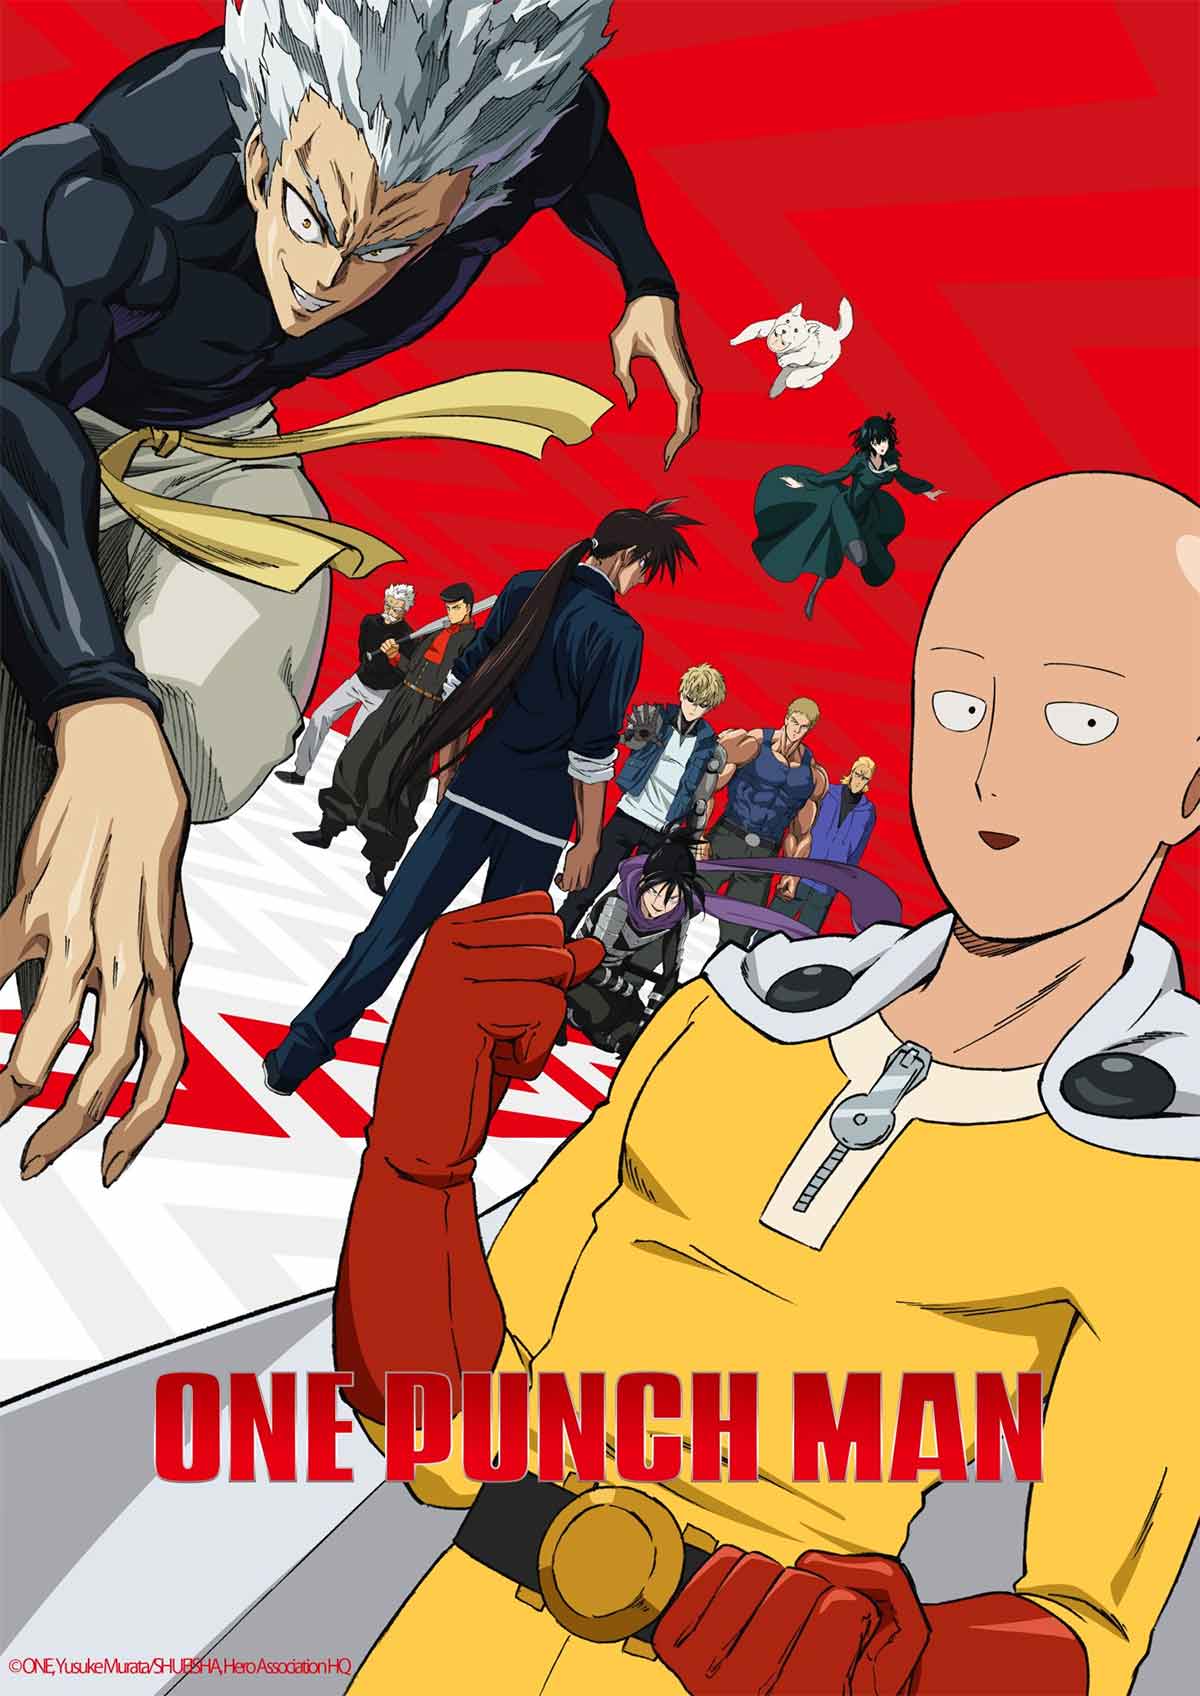 Porque One Punch Man 2 aún no está disponible en Netflix?